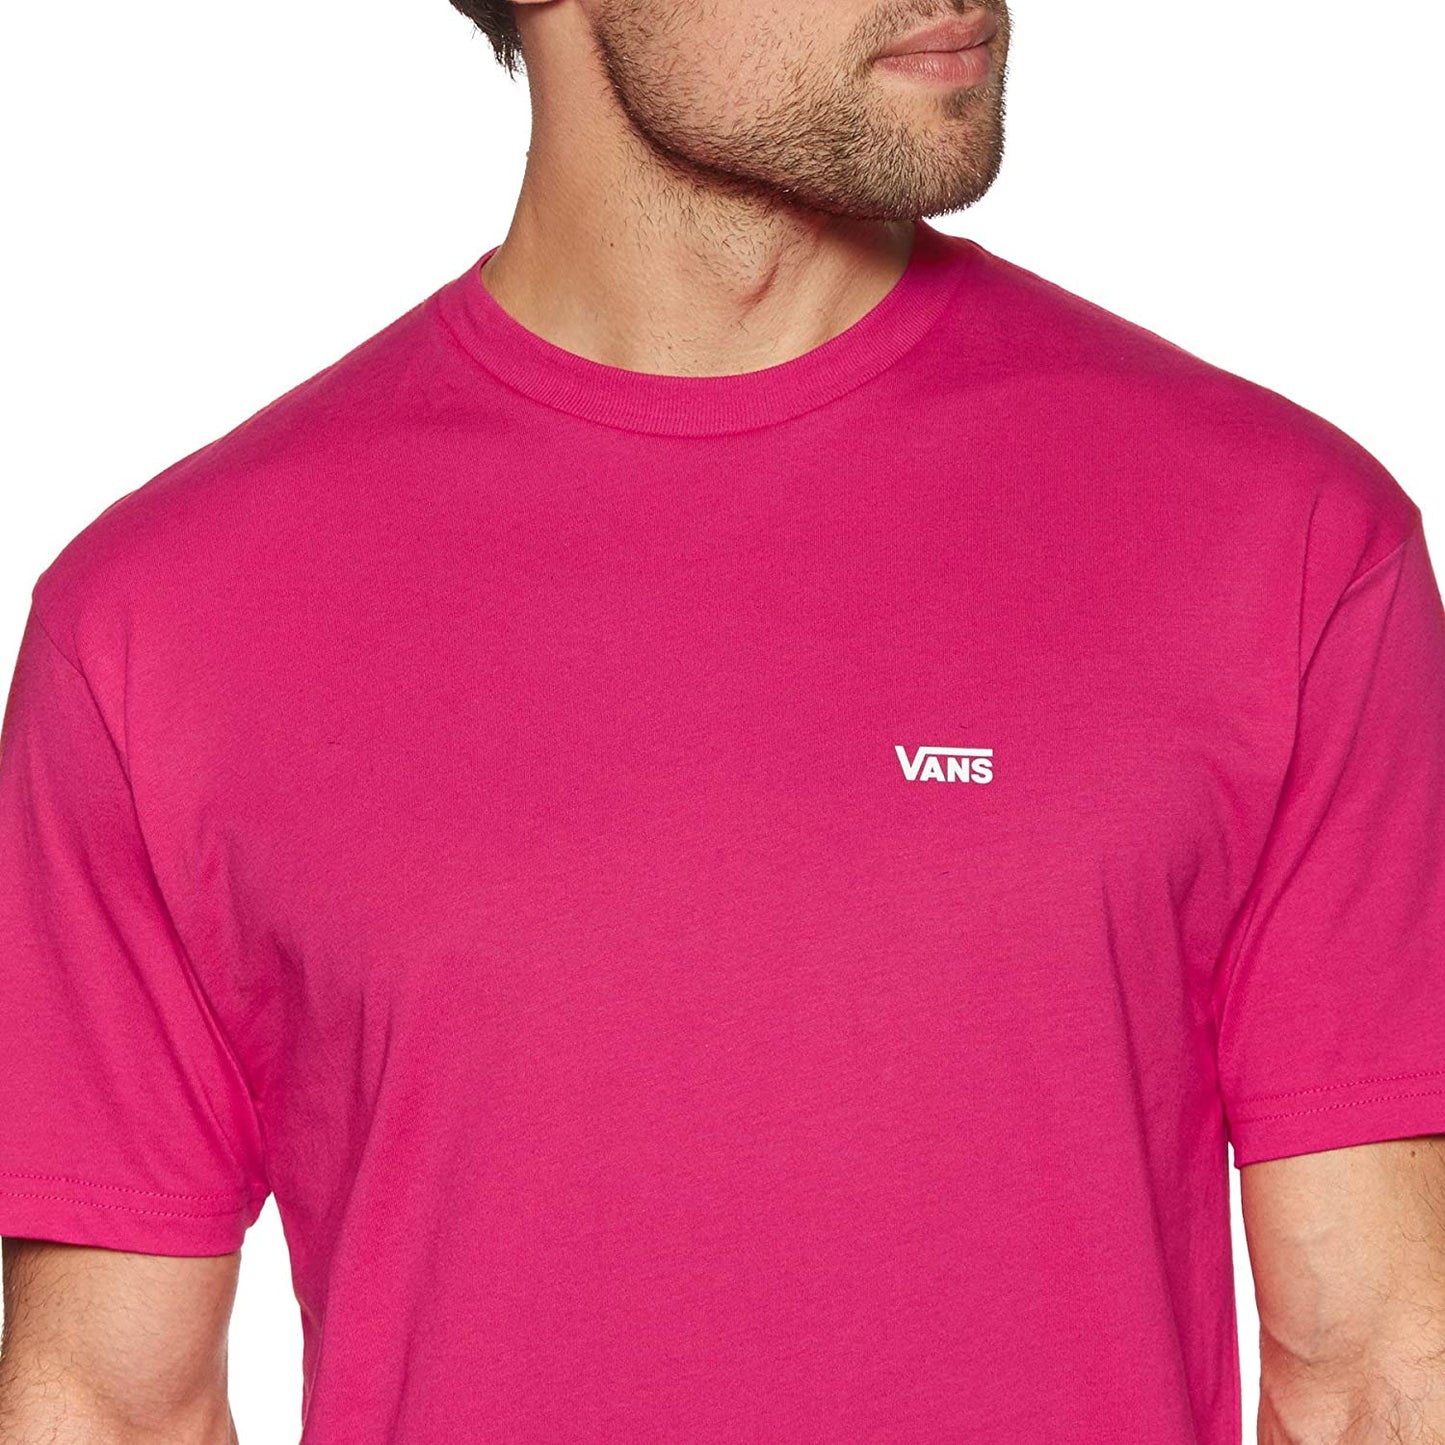 Vans Men's Left Chest Logo T-Shirt